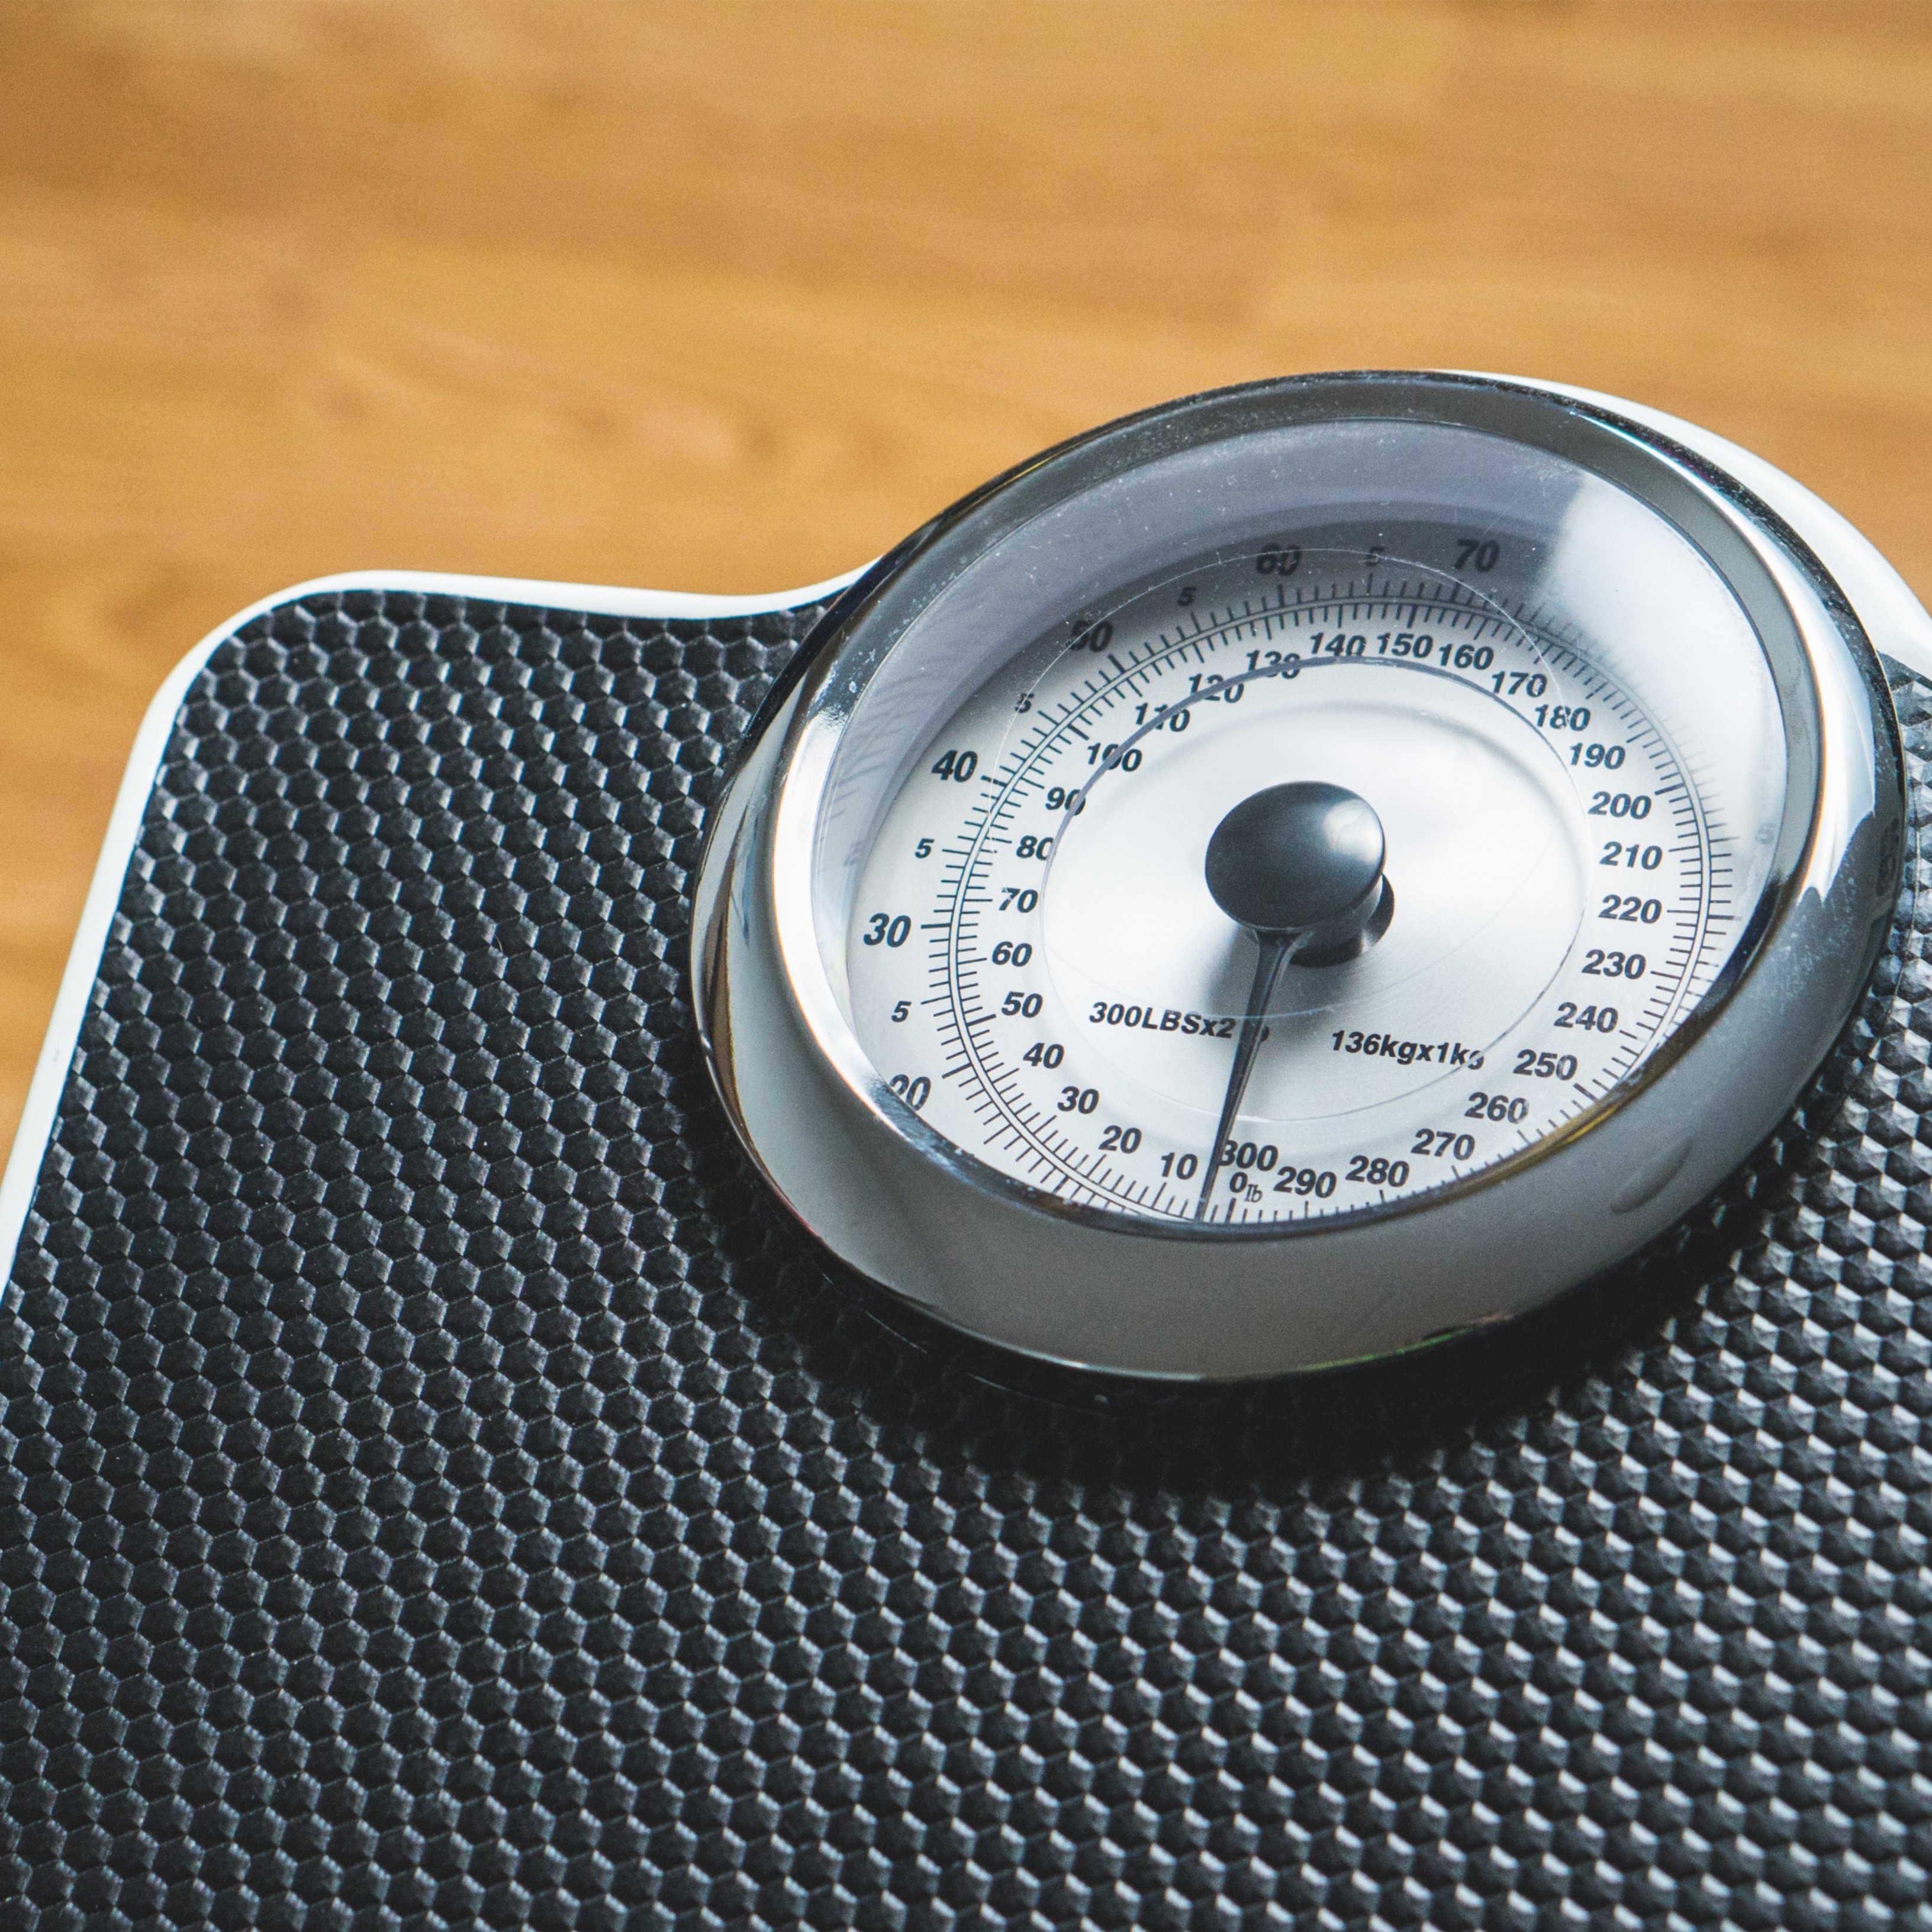 Cau un mite sobre la pèrdua de pes, la dieta i l'exercici